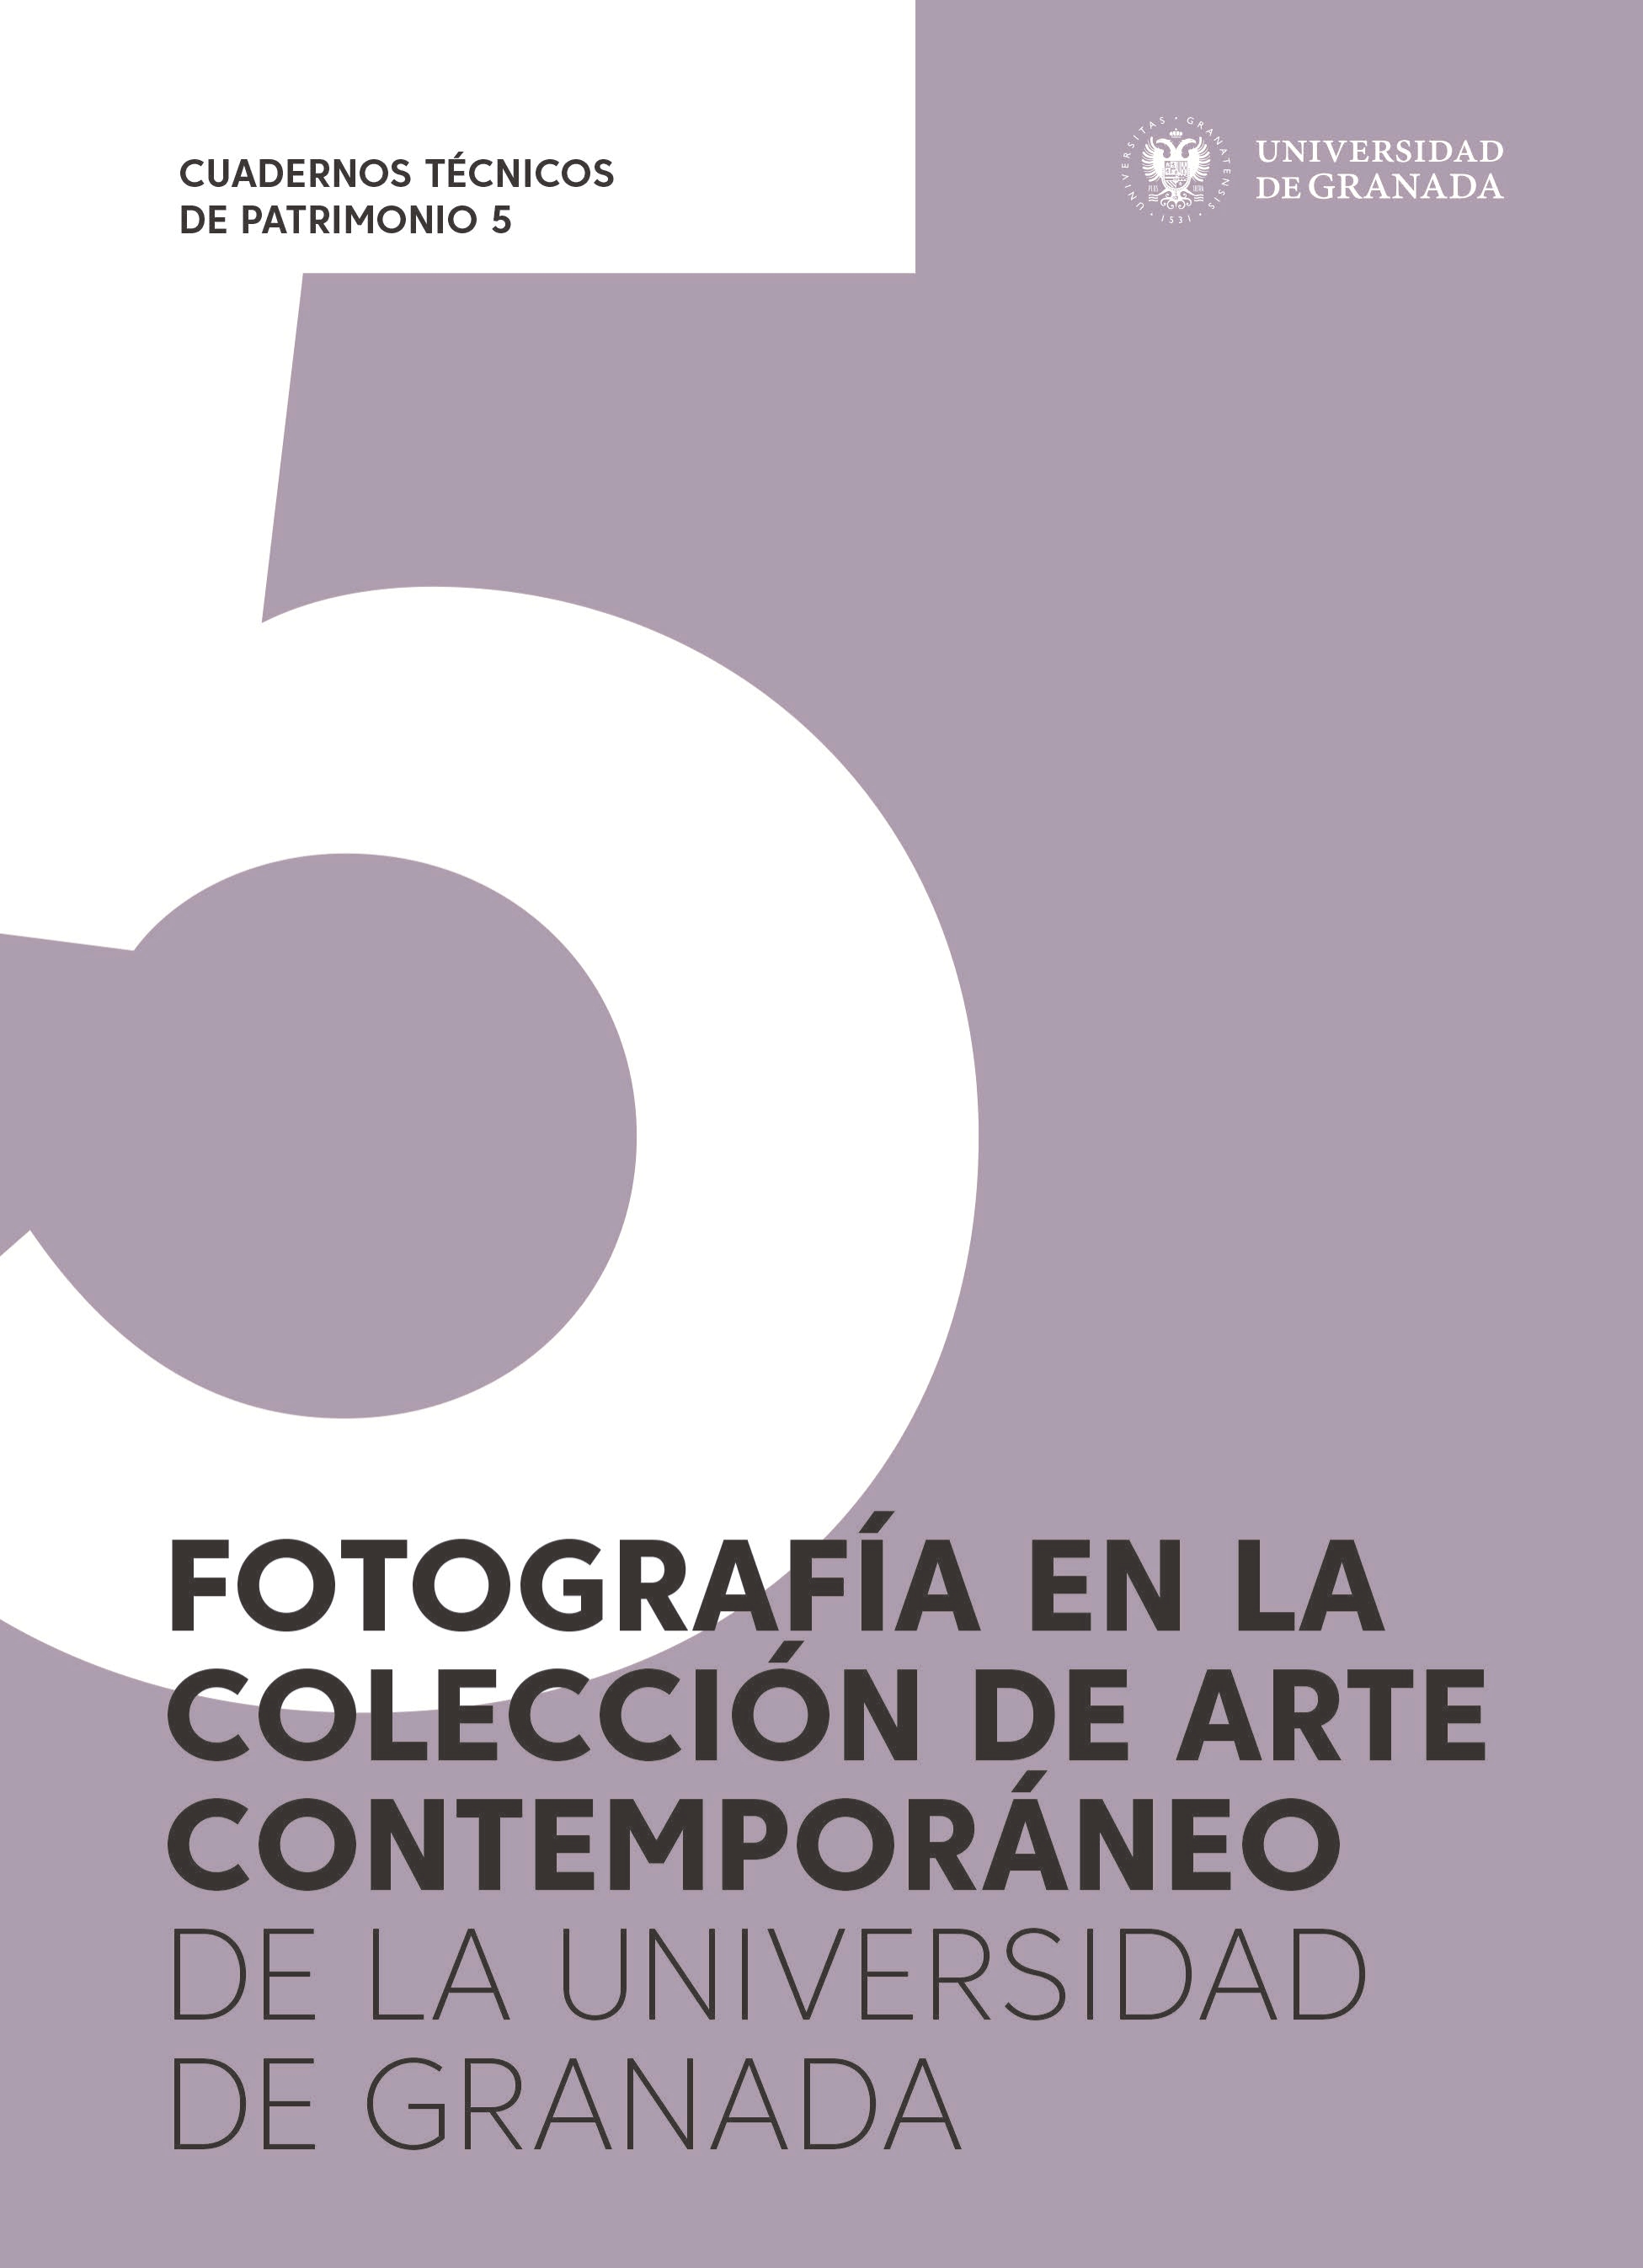 Imagen de portada del libro Fotografía en la colección de arte contemporáneo de la Universidad de Granada